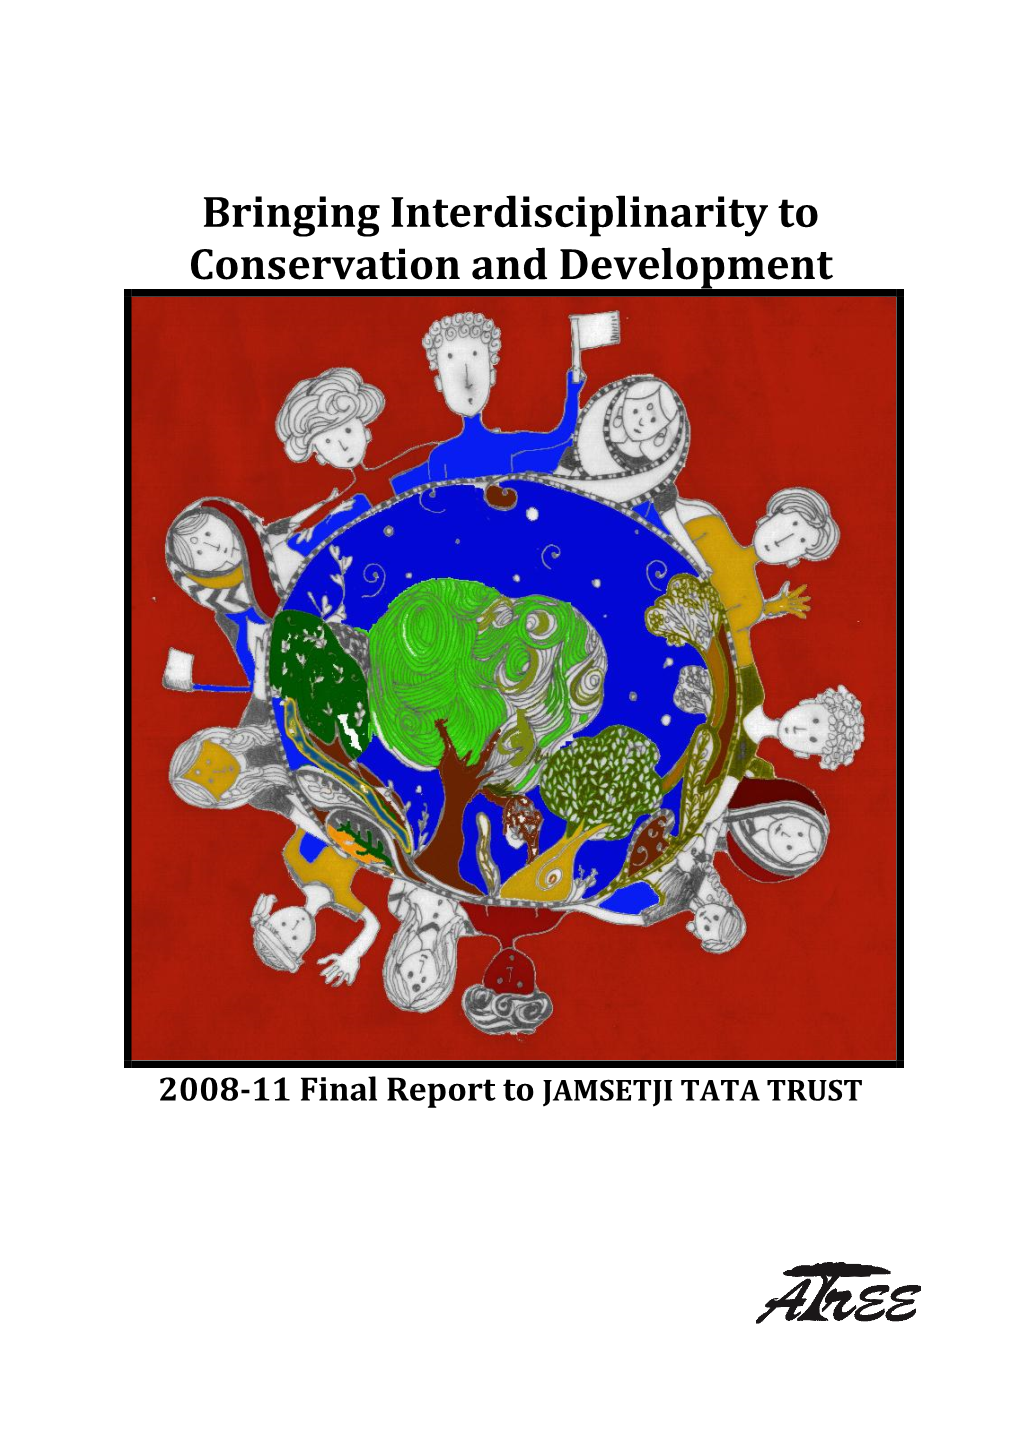 Final Report to Jamsetji Tata Trust for 2008—2011